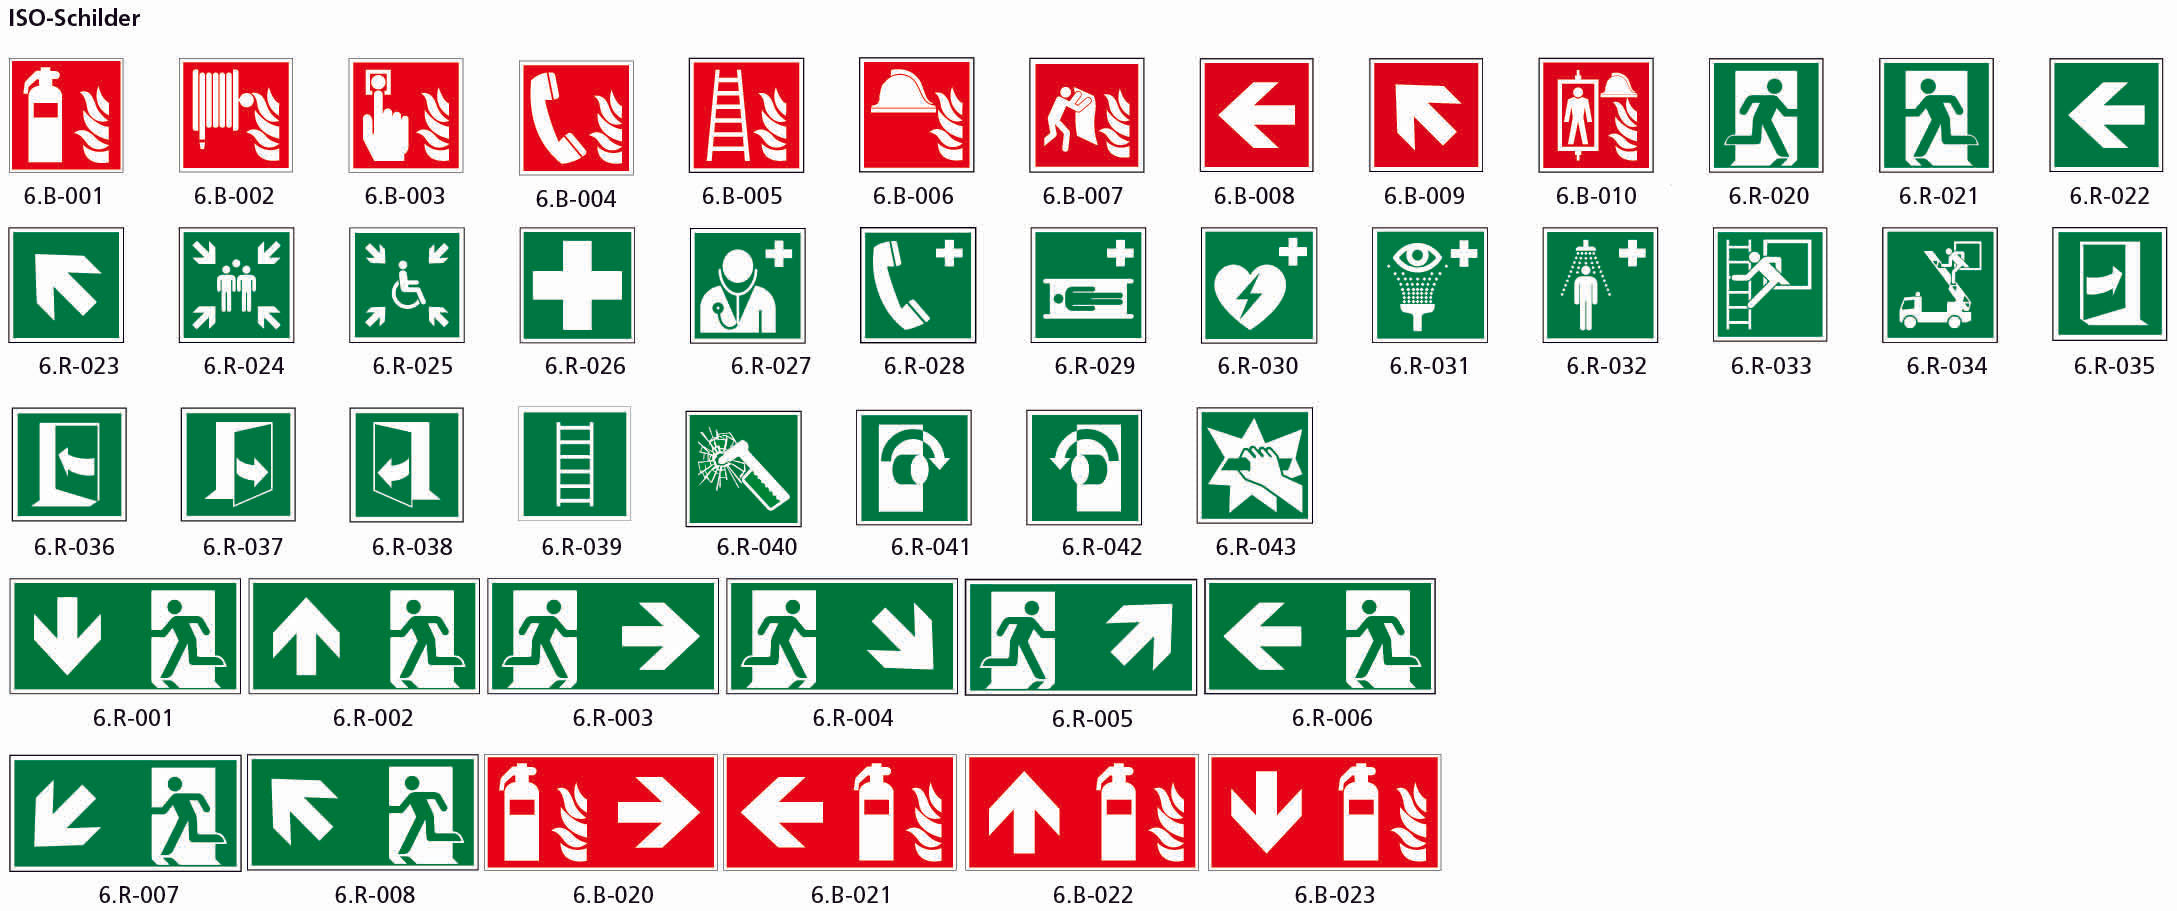 Fahnenschild doppelseitig, Rettungs- und Brandschutzzeichen, nachleuchtend, PM, 150 x 150 mm, gemäss Logobibliothek